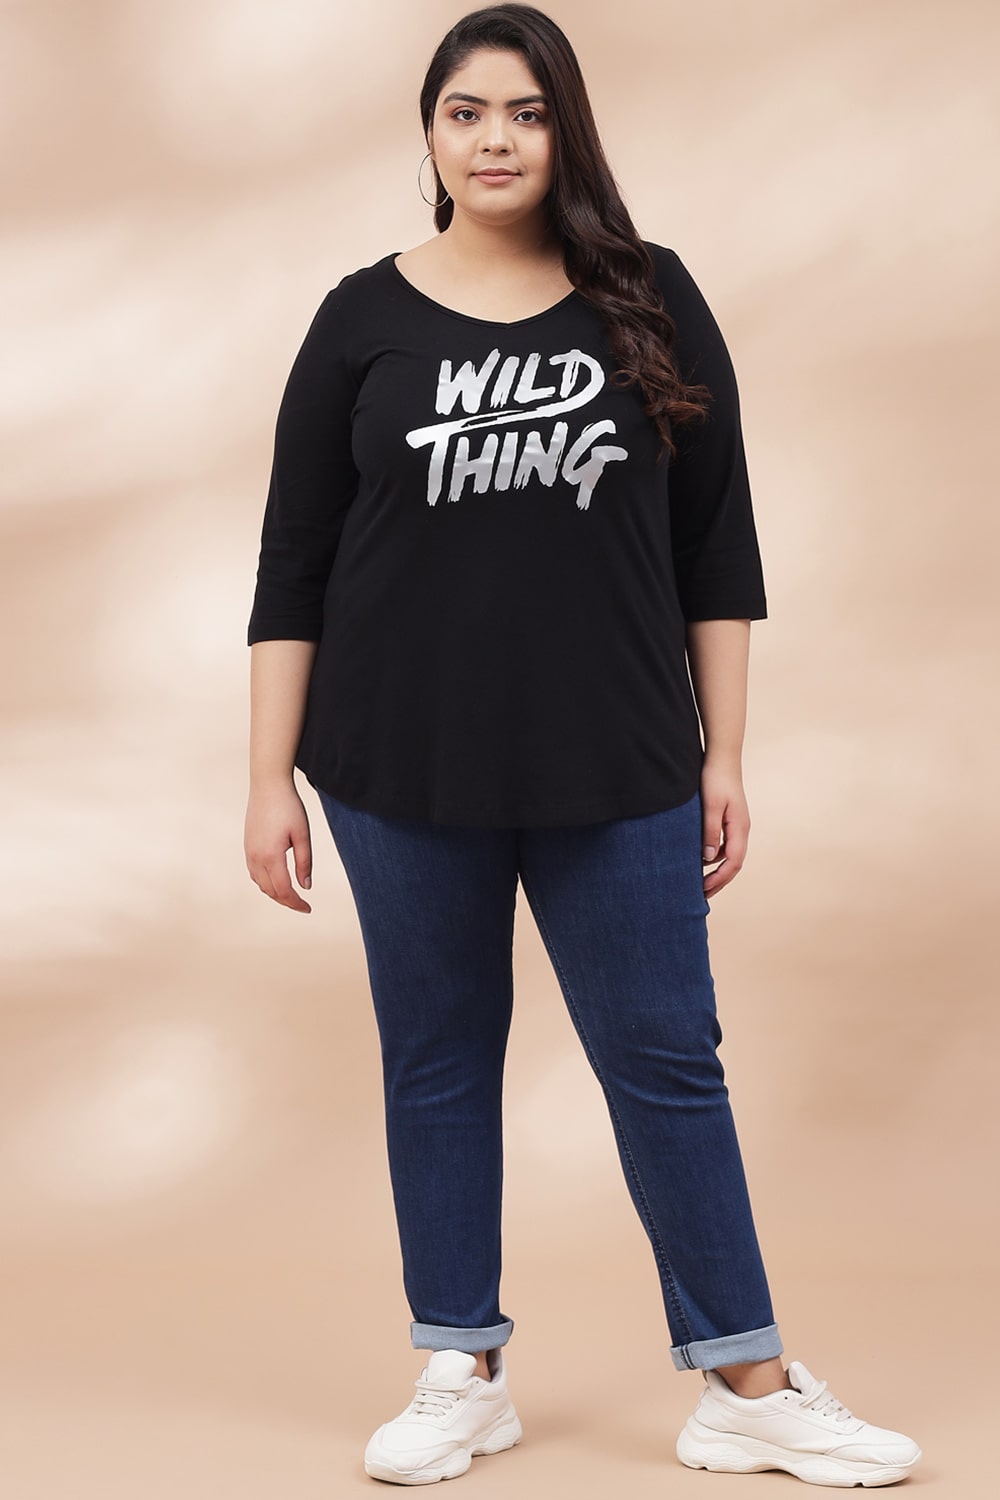 Plus Size Wild Thing Black Tshirt